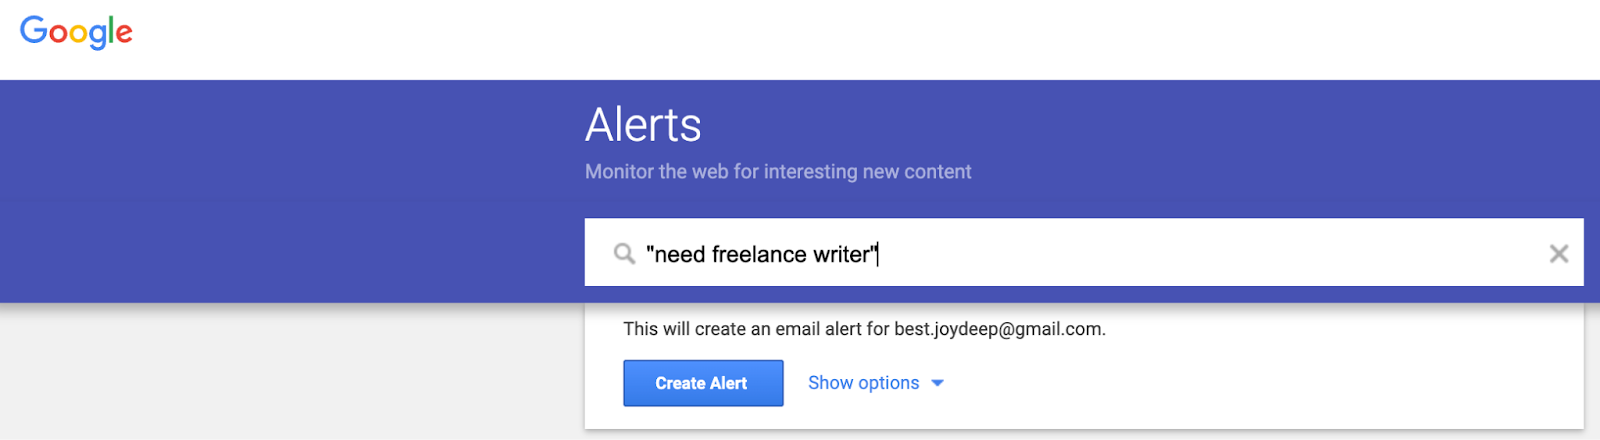 Google Alert for need freelance writer